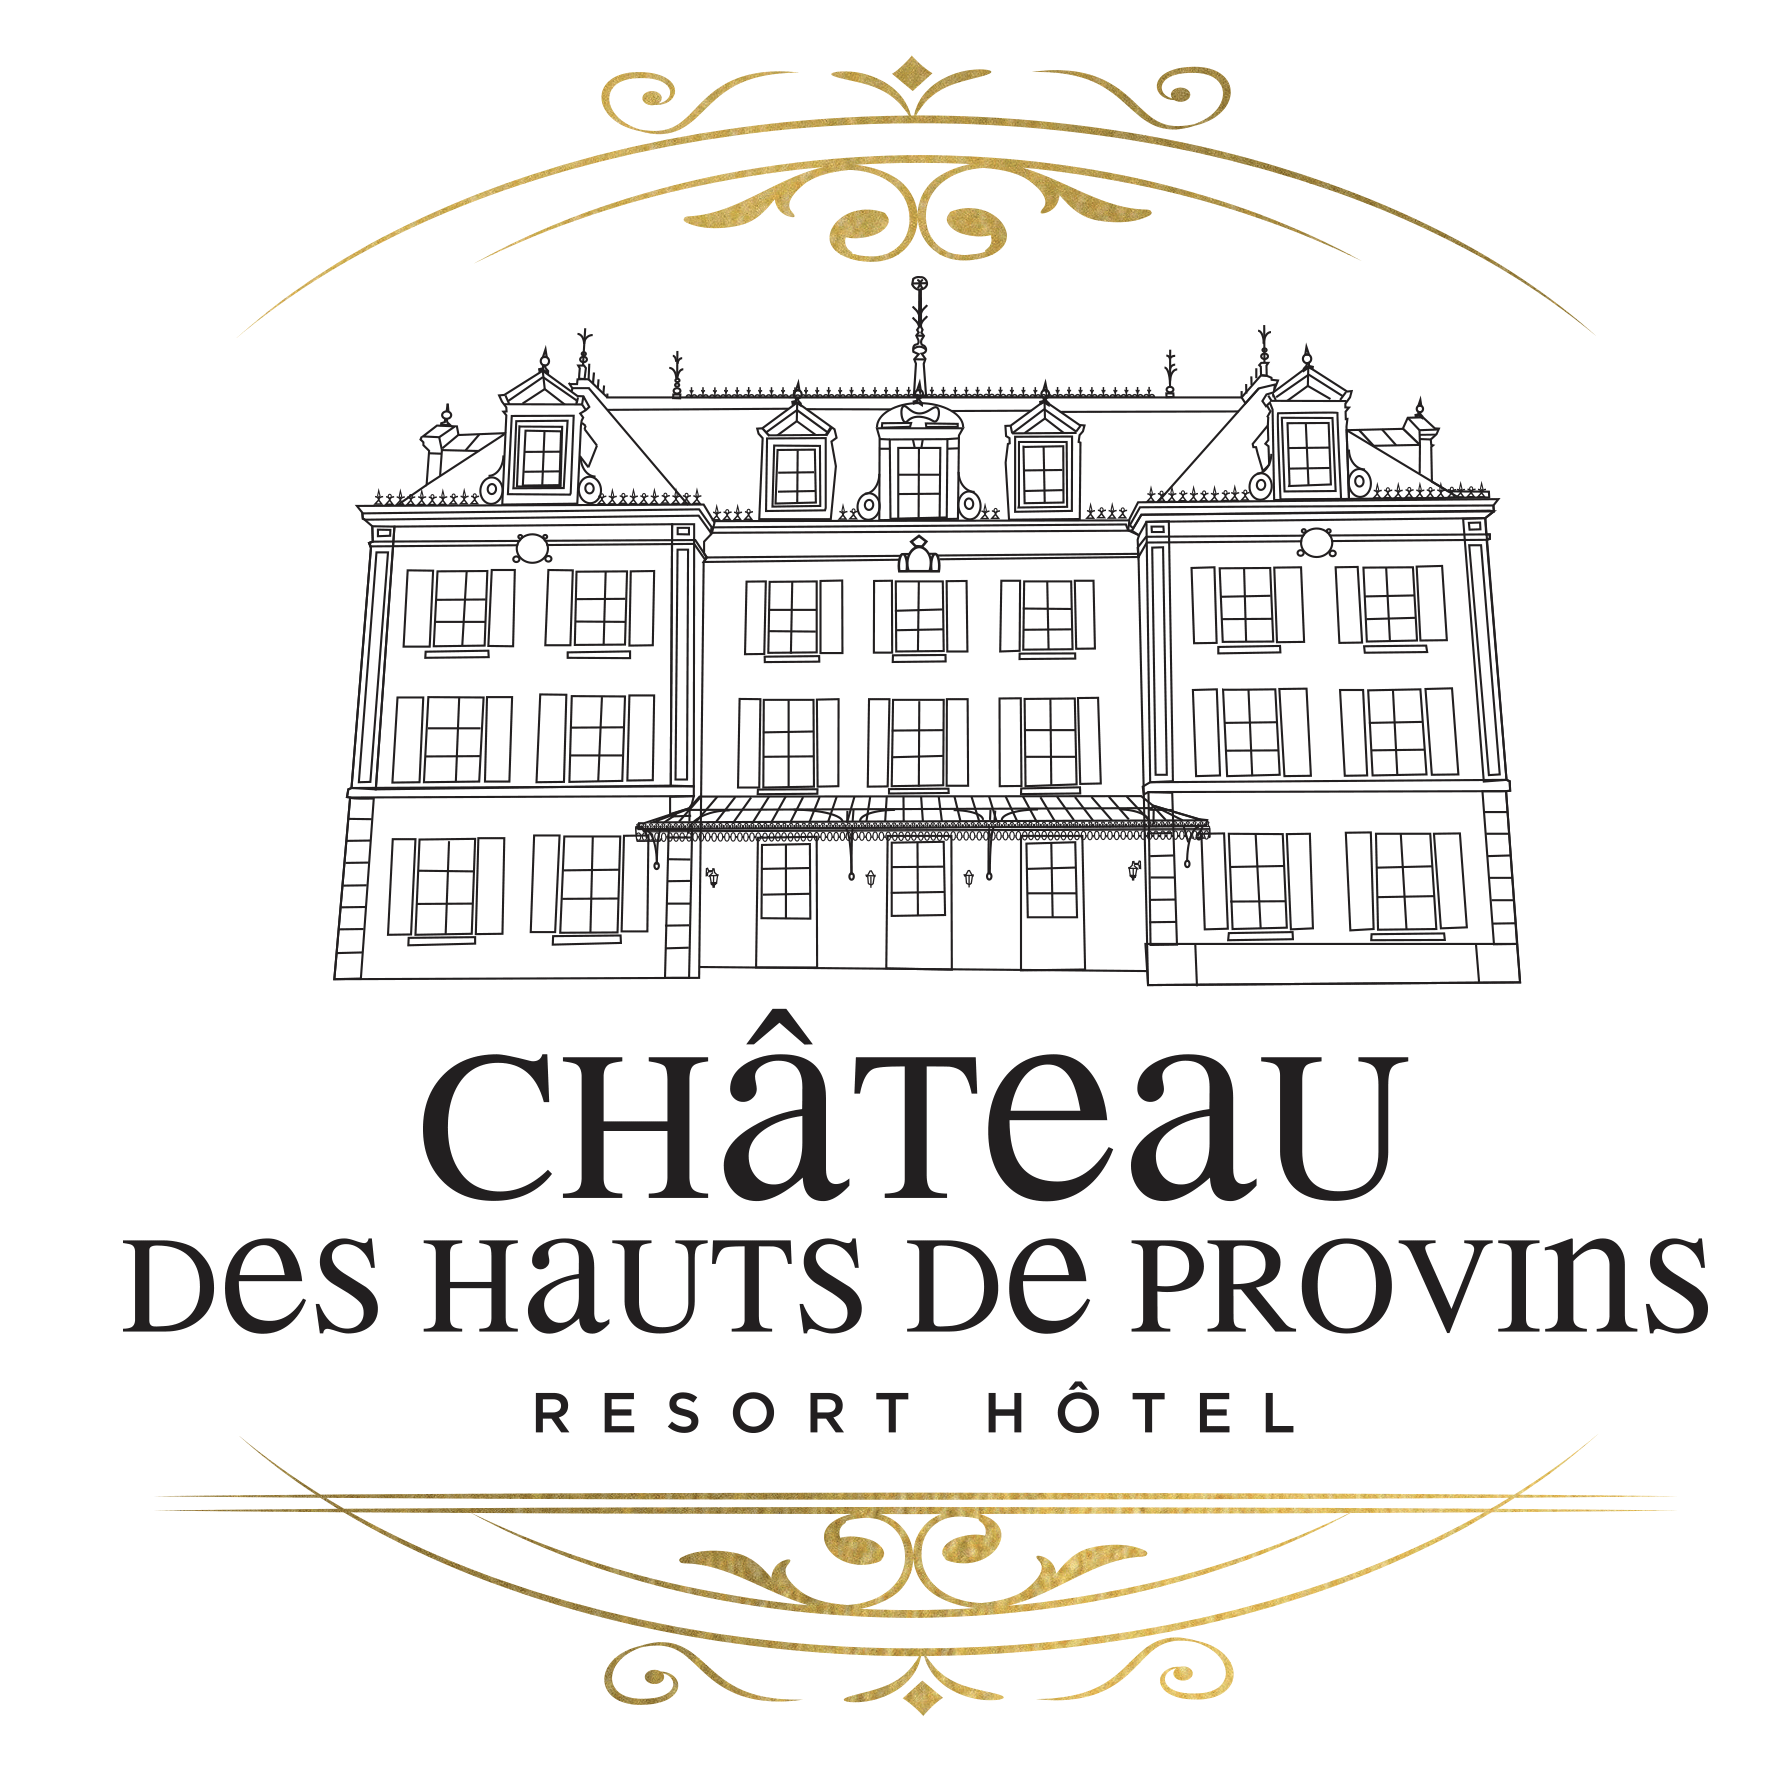 Château des Hauts de provins